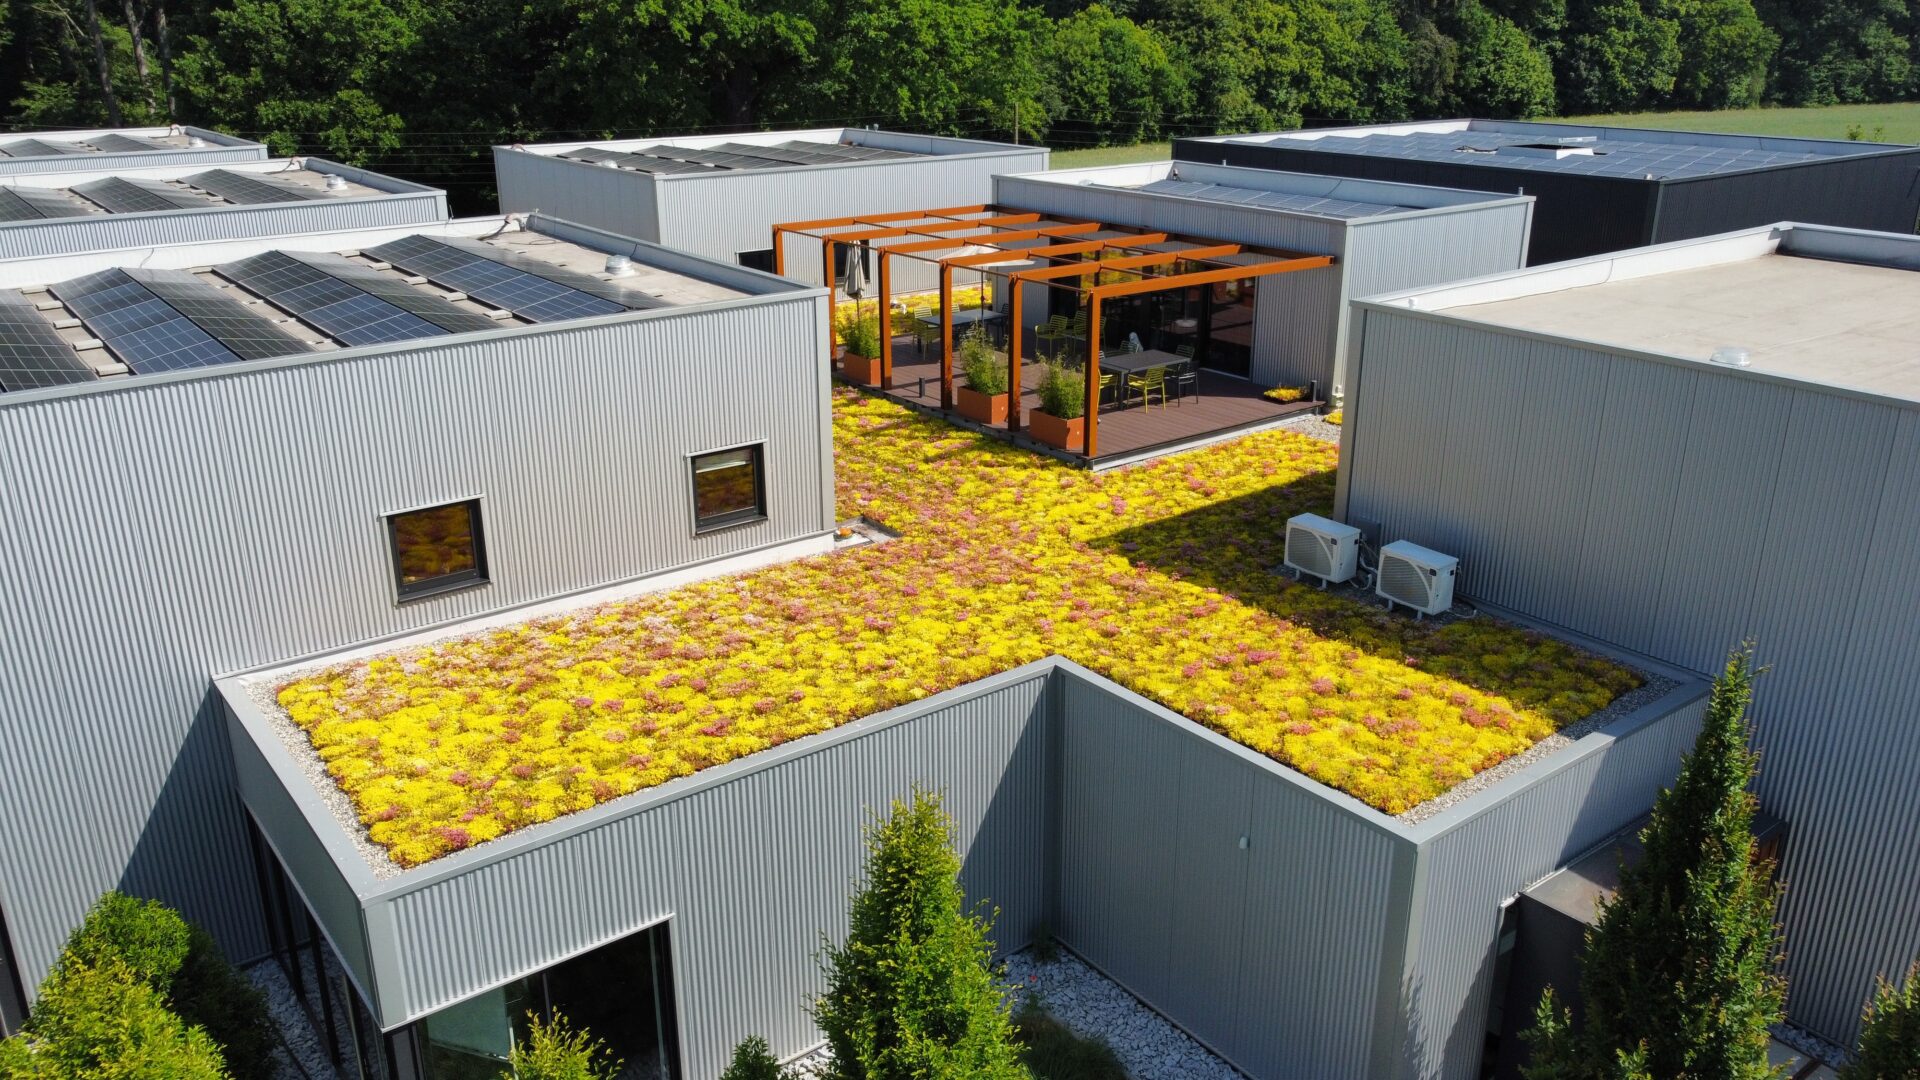 Bürogebäude mit begrünter Dachterrasse in voller Blühte